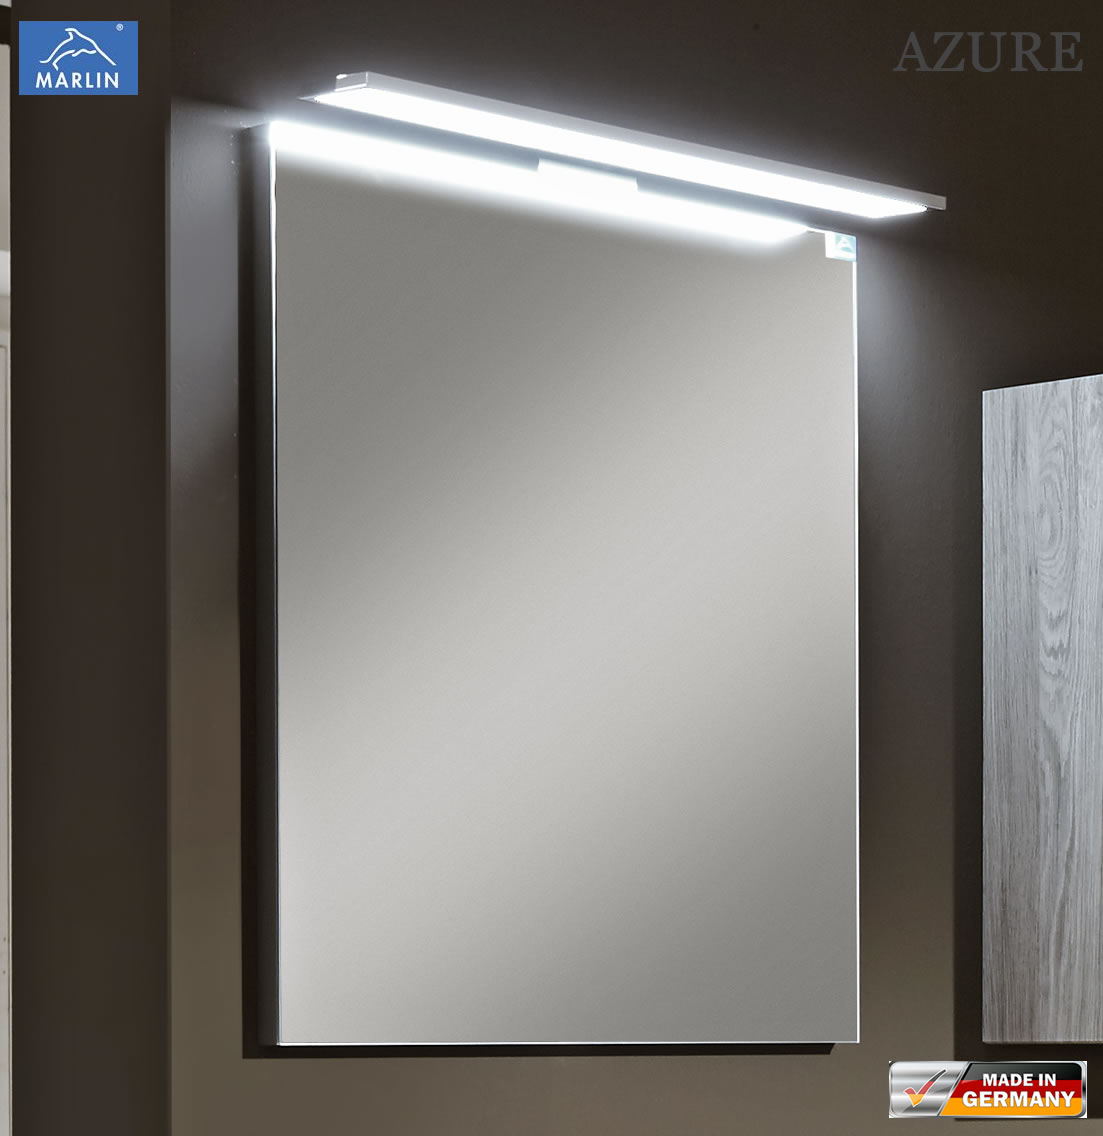 Marlin Azure Spiegel 60 cm mit Aufsatzleuchte (2 LED Lichtfarben)